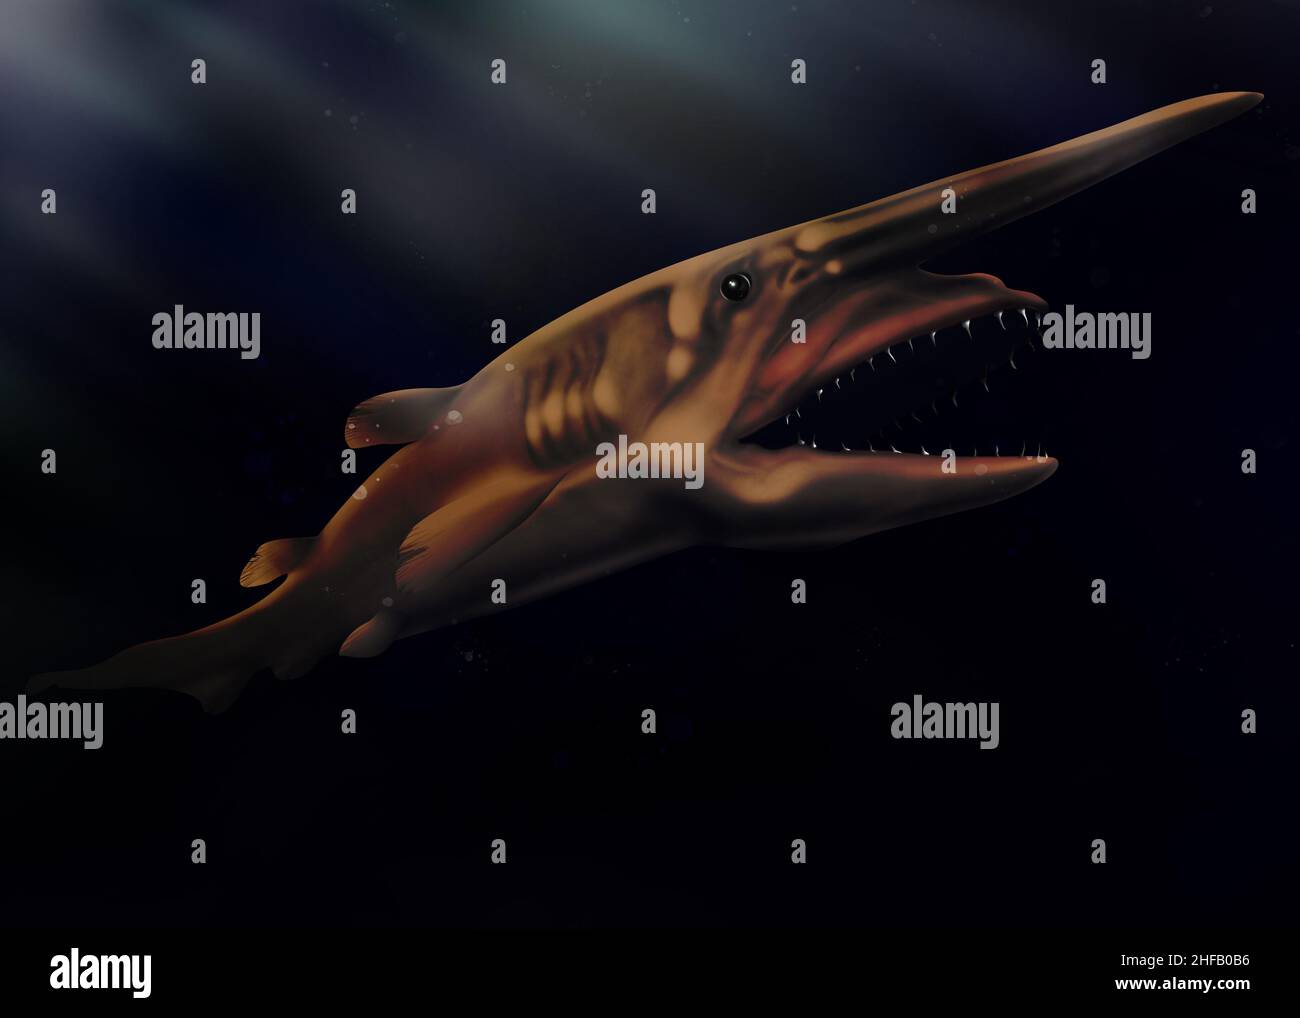 Koboldhai (Mitsukurina owstoni) Tiefseeihai. Lebendes Fossil. Haifisch-Illustration isoliert. Tiefseefische. Stockfoto